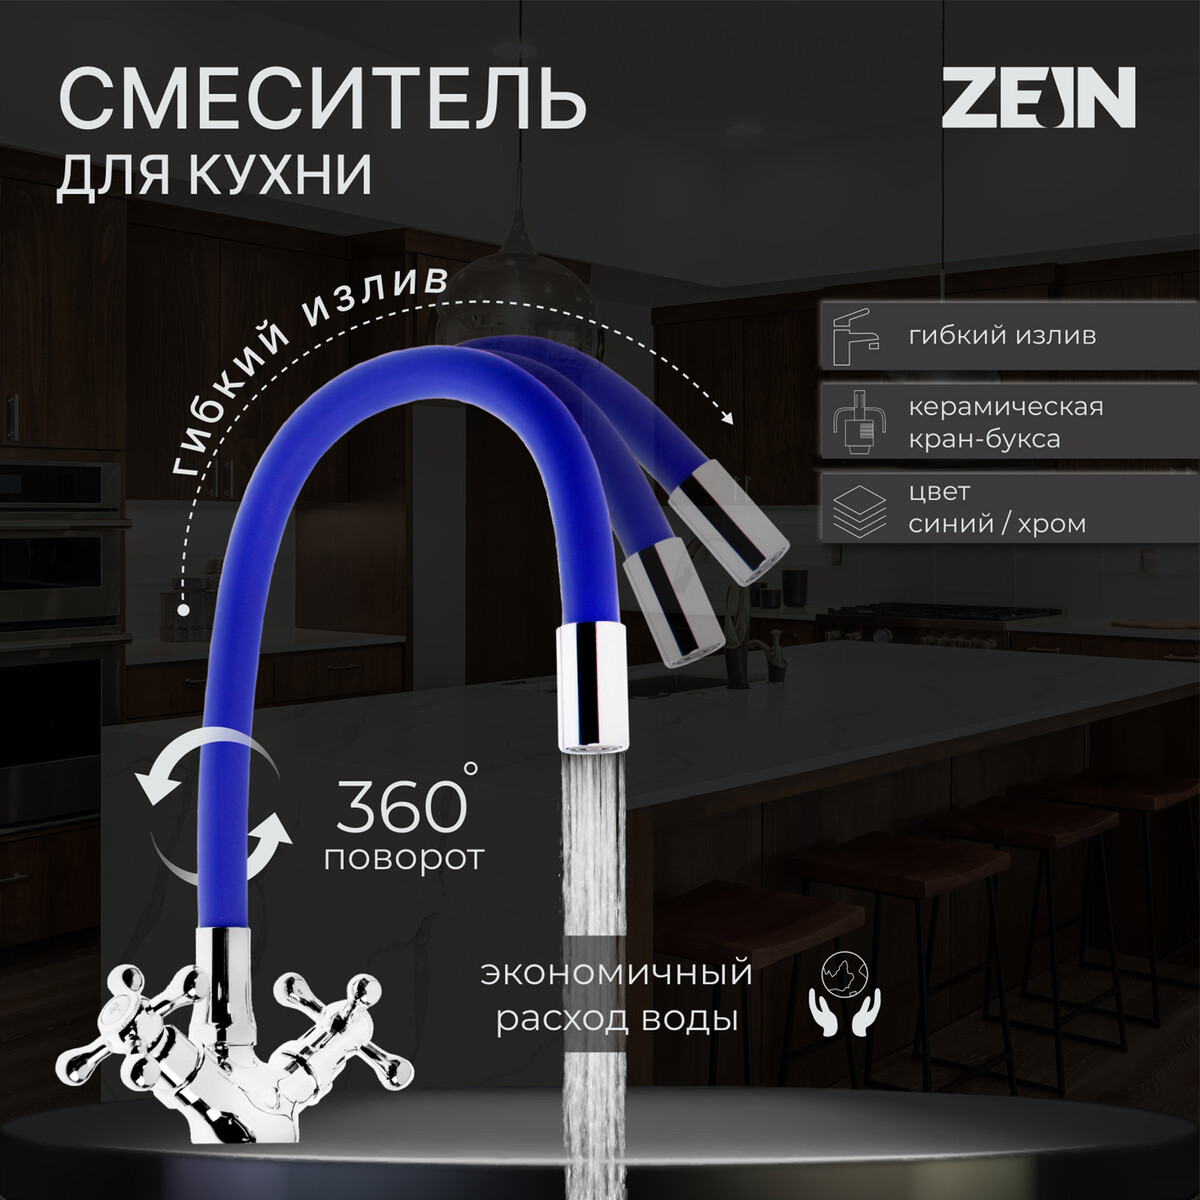 Смеситель для кухни zein z2105, двухвентильный, силиконовый излив, синий/хром смеситель для кухни solone с кран буксой для одного типа воды хром jik15 a102 a